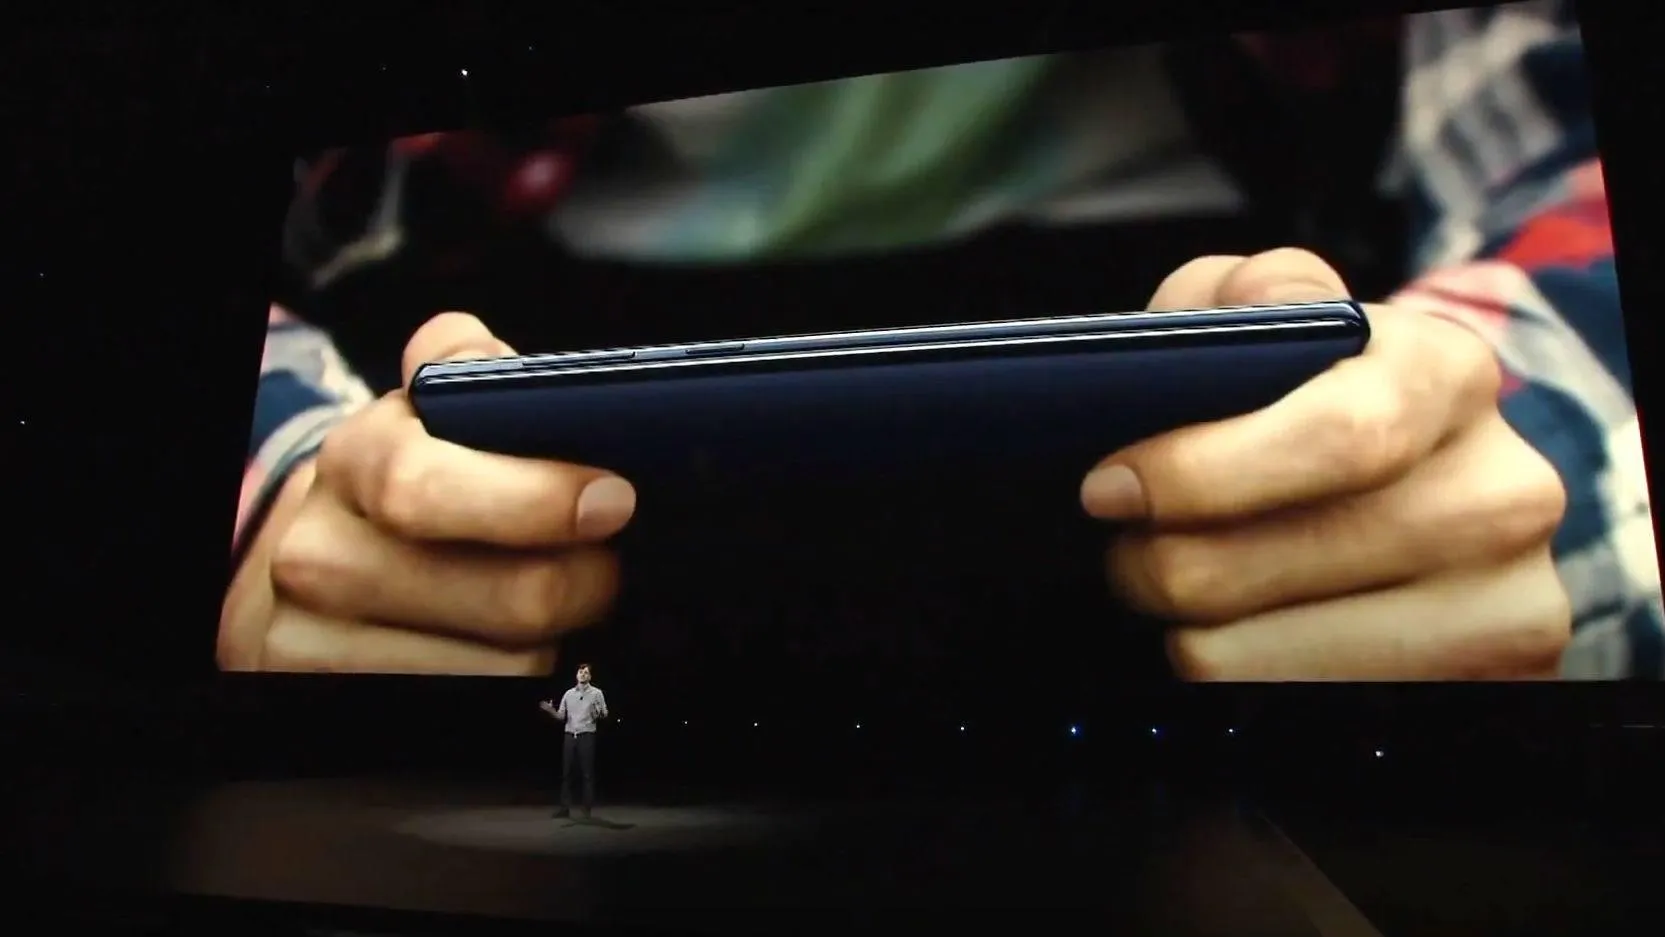 Завдяки потужному графічному прискорювачу Samsung Galaxy Note 9 легко запускатиме ігри та VR-додатки